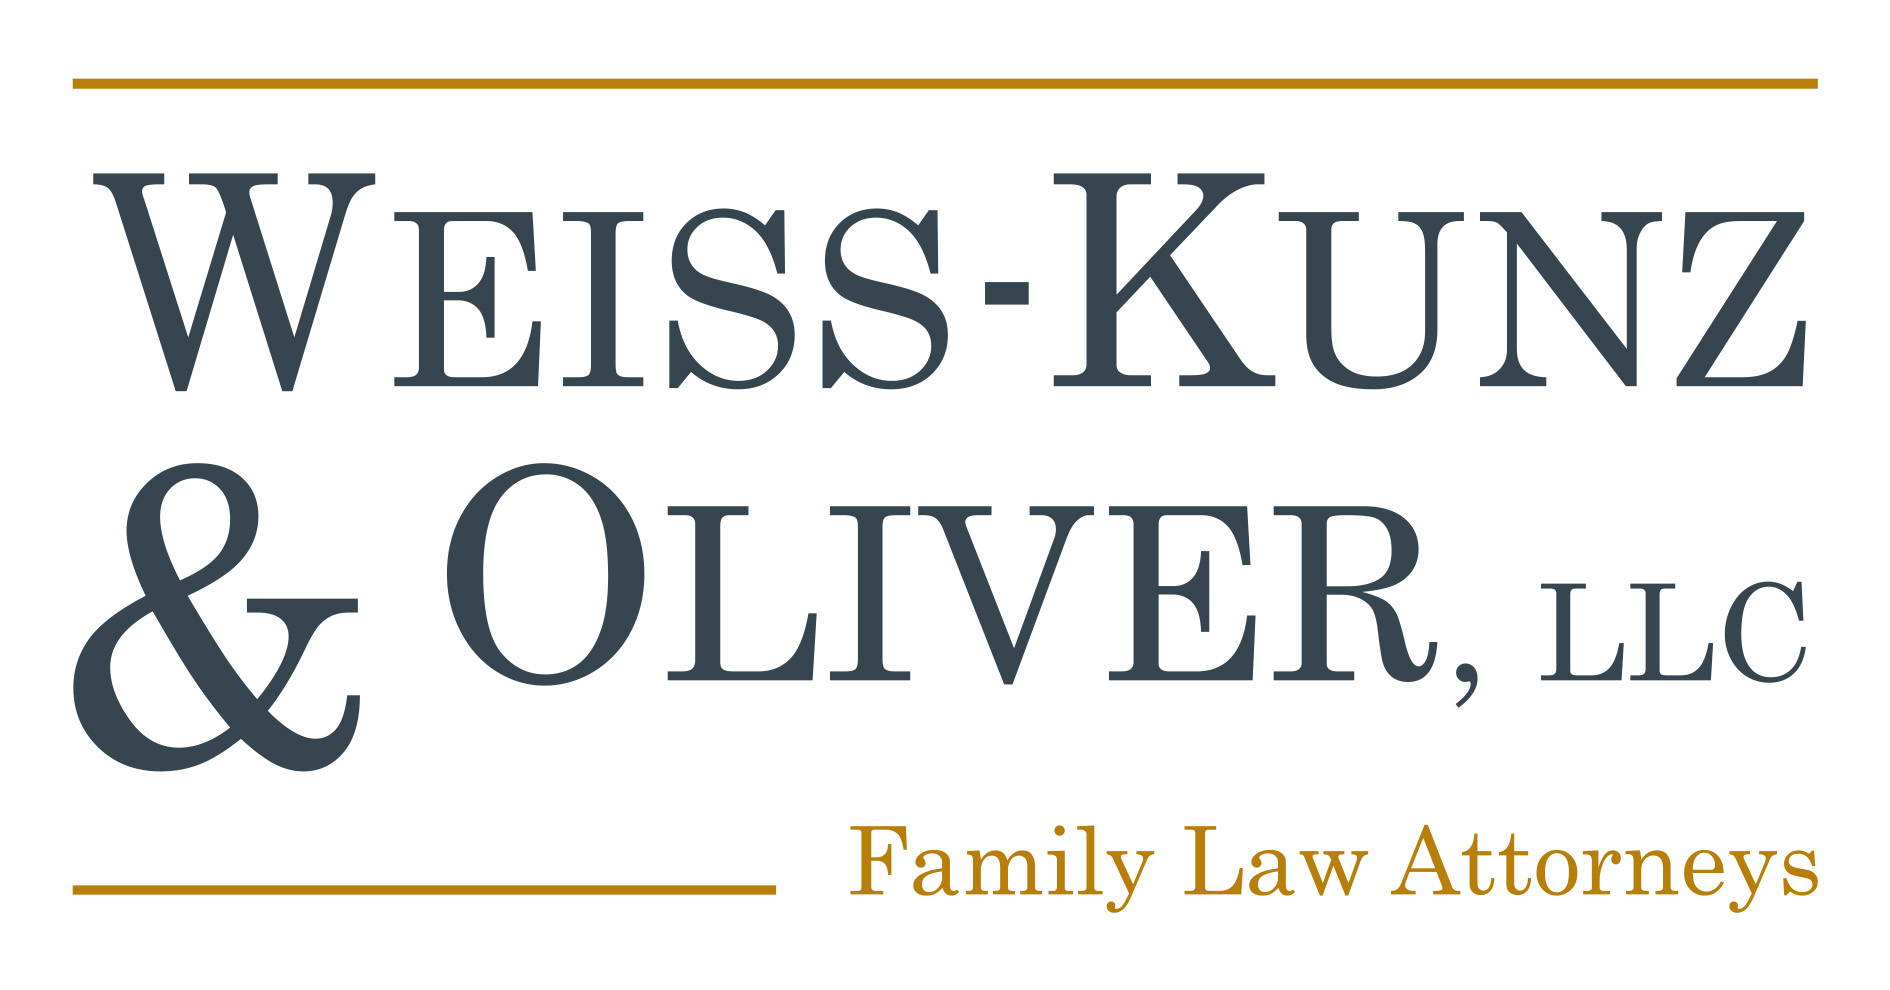 Weiss Kunz & Oliver, LLC